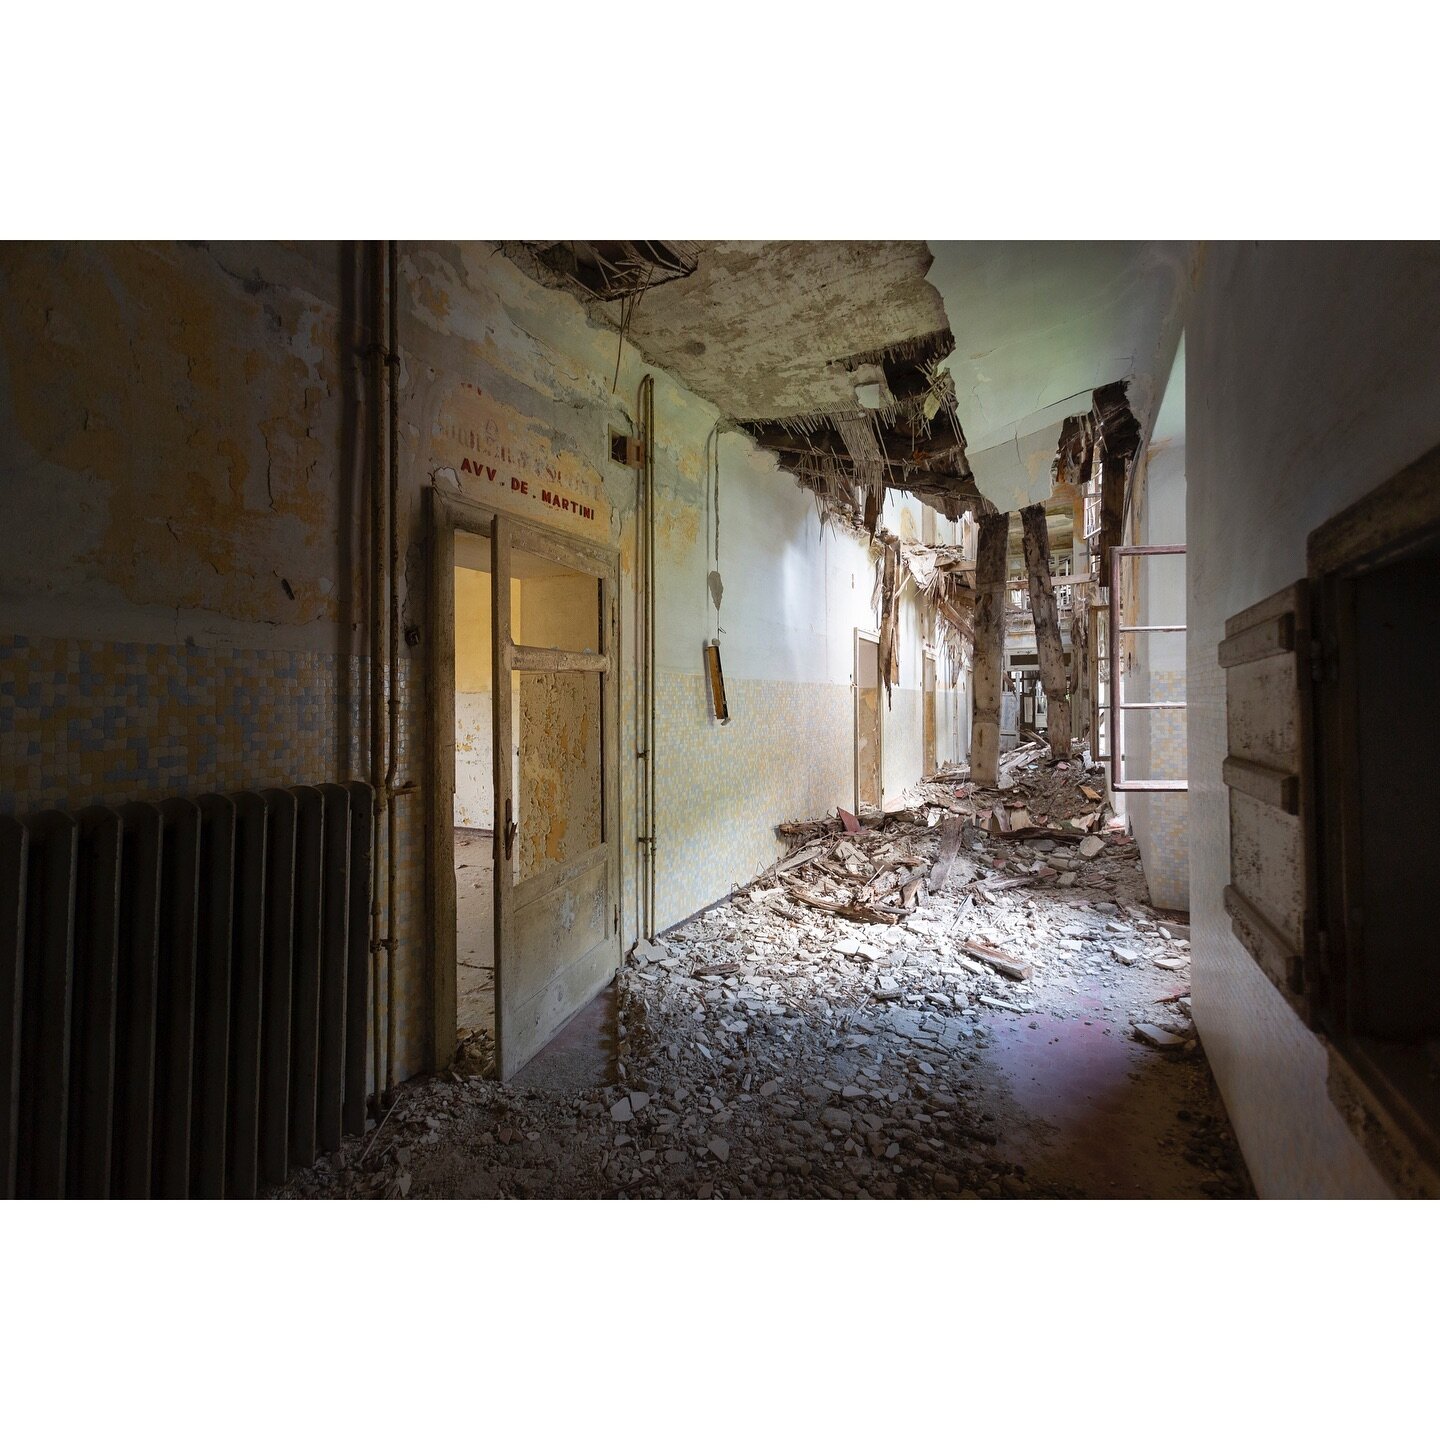 Hospital, Northern Italy
.
#urbex #abandoned #urbanexploration #realgoodmag #oftheafternoon #yetmagazine #imaginarymagnitude #abandonedplaces #somewheremag #theheavycollective #documentingspace #rundownmagazine #urbexphotography  #streetphotography #